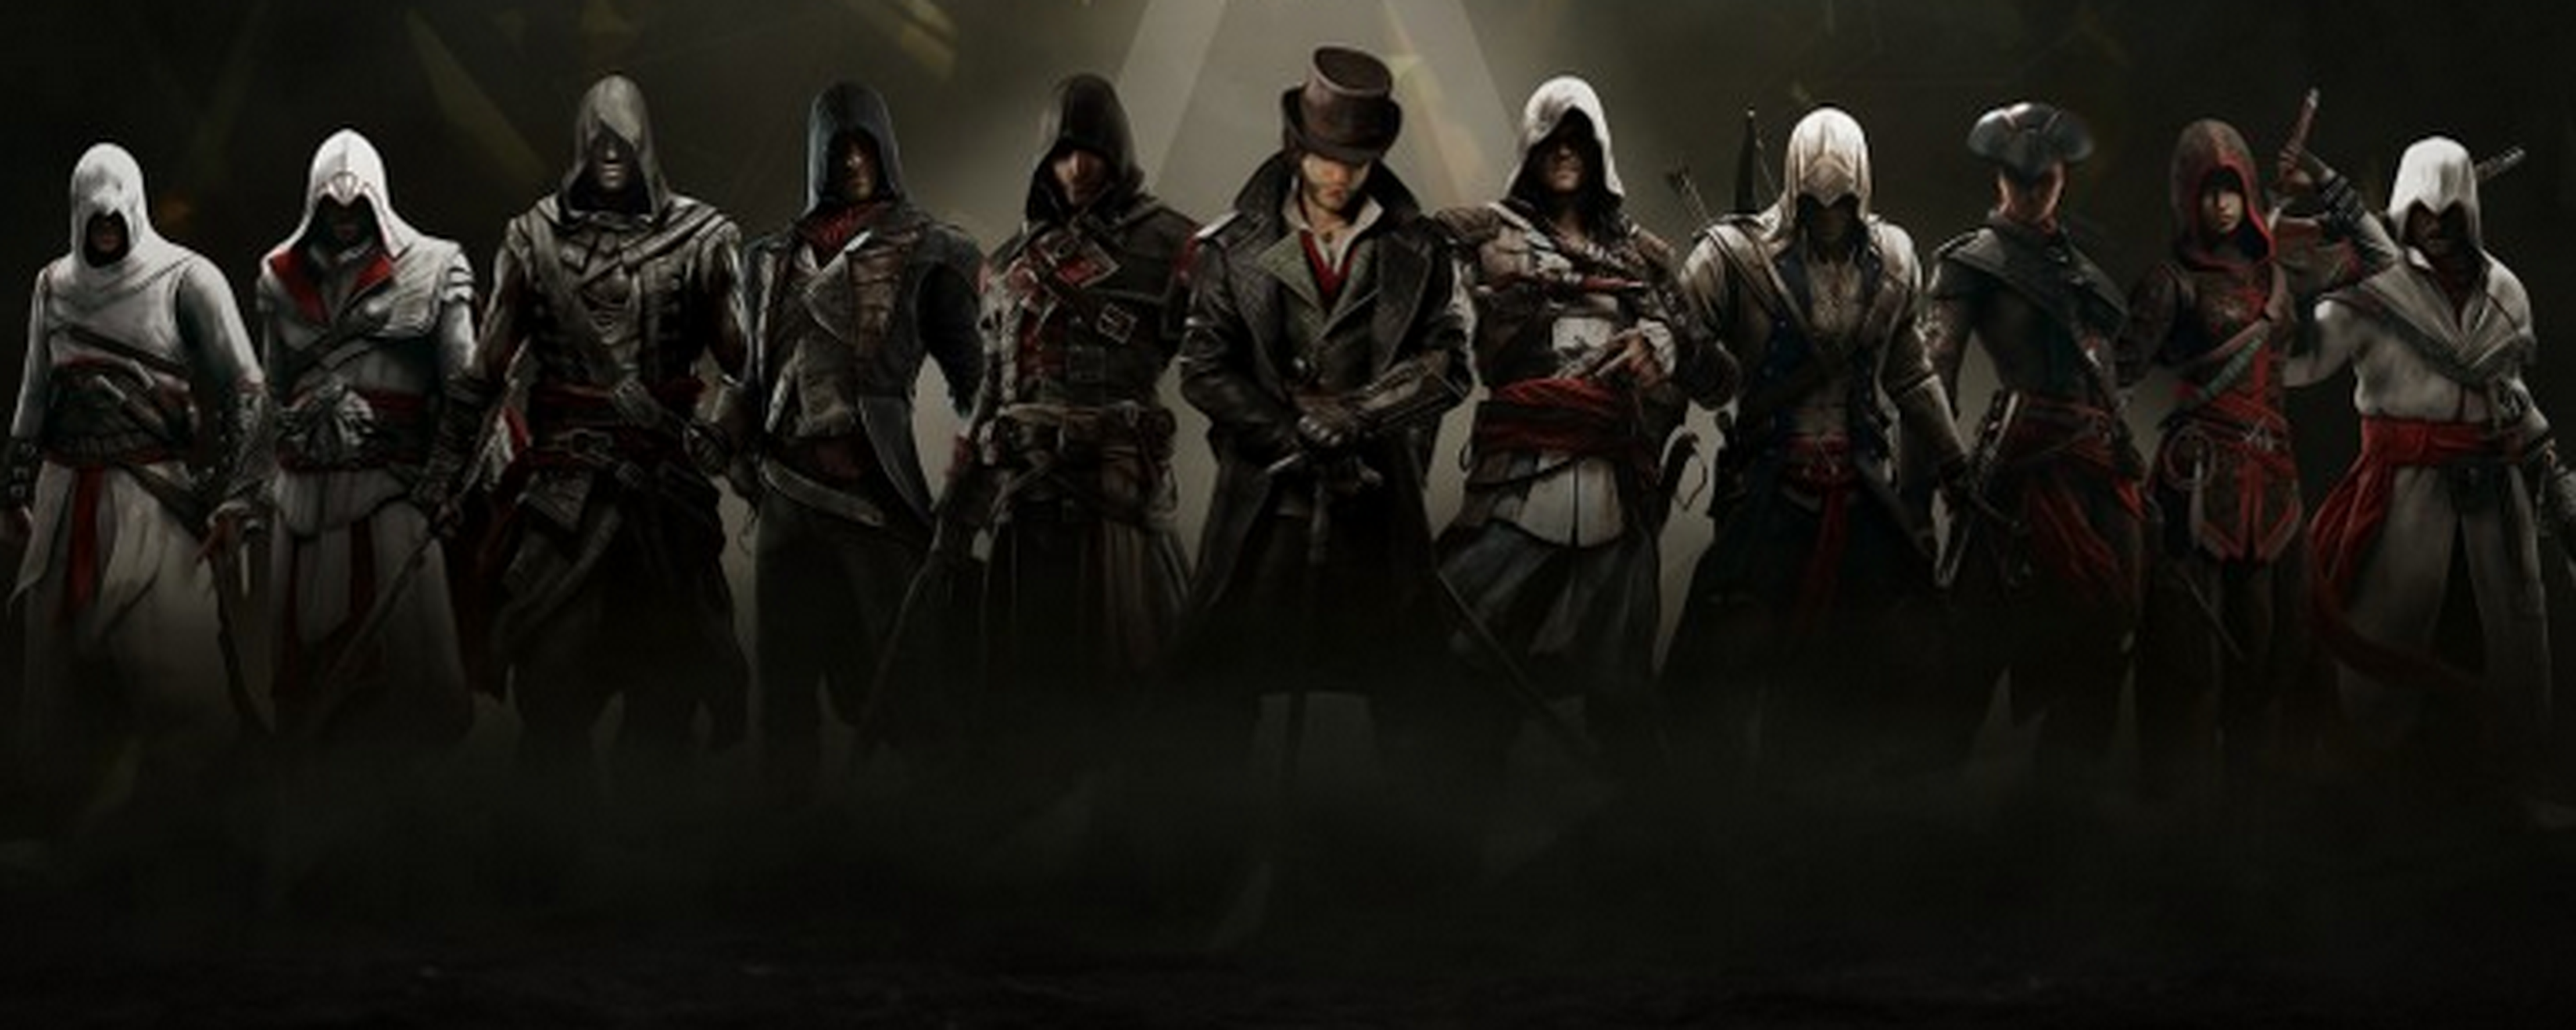 Assassin's Creed Collection registrado por Ubisoft